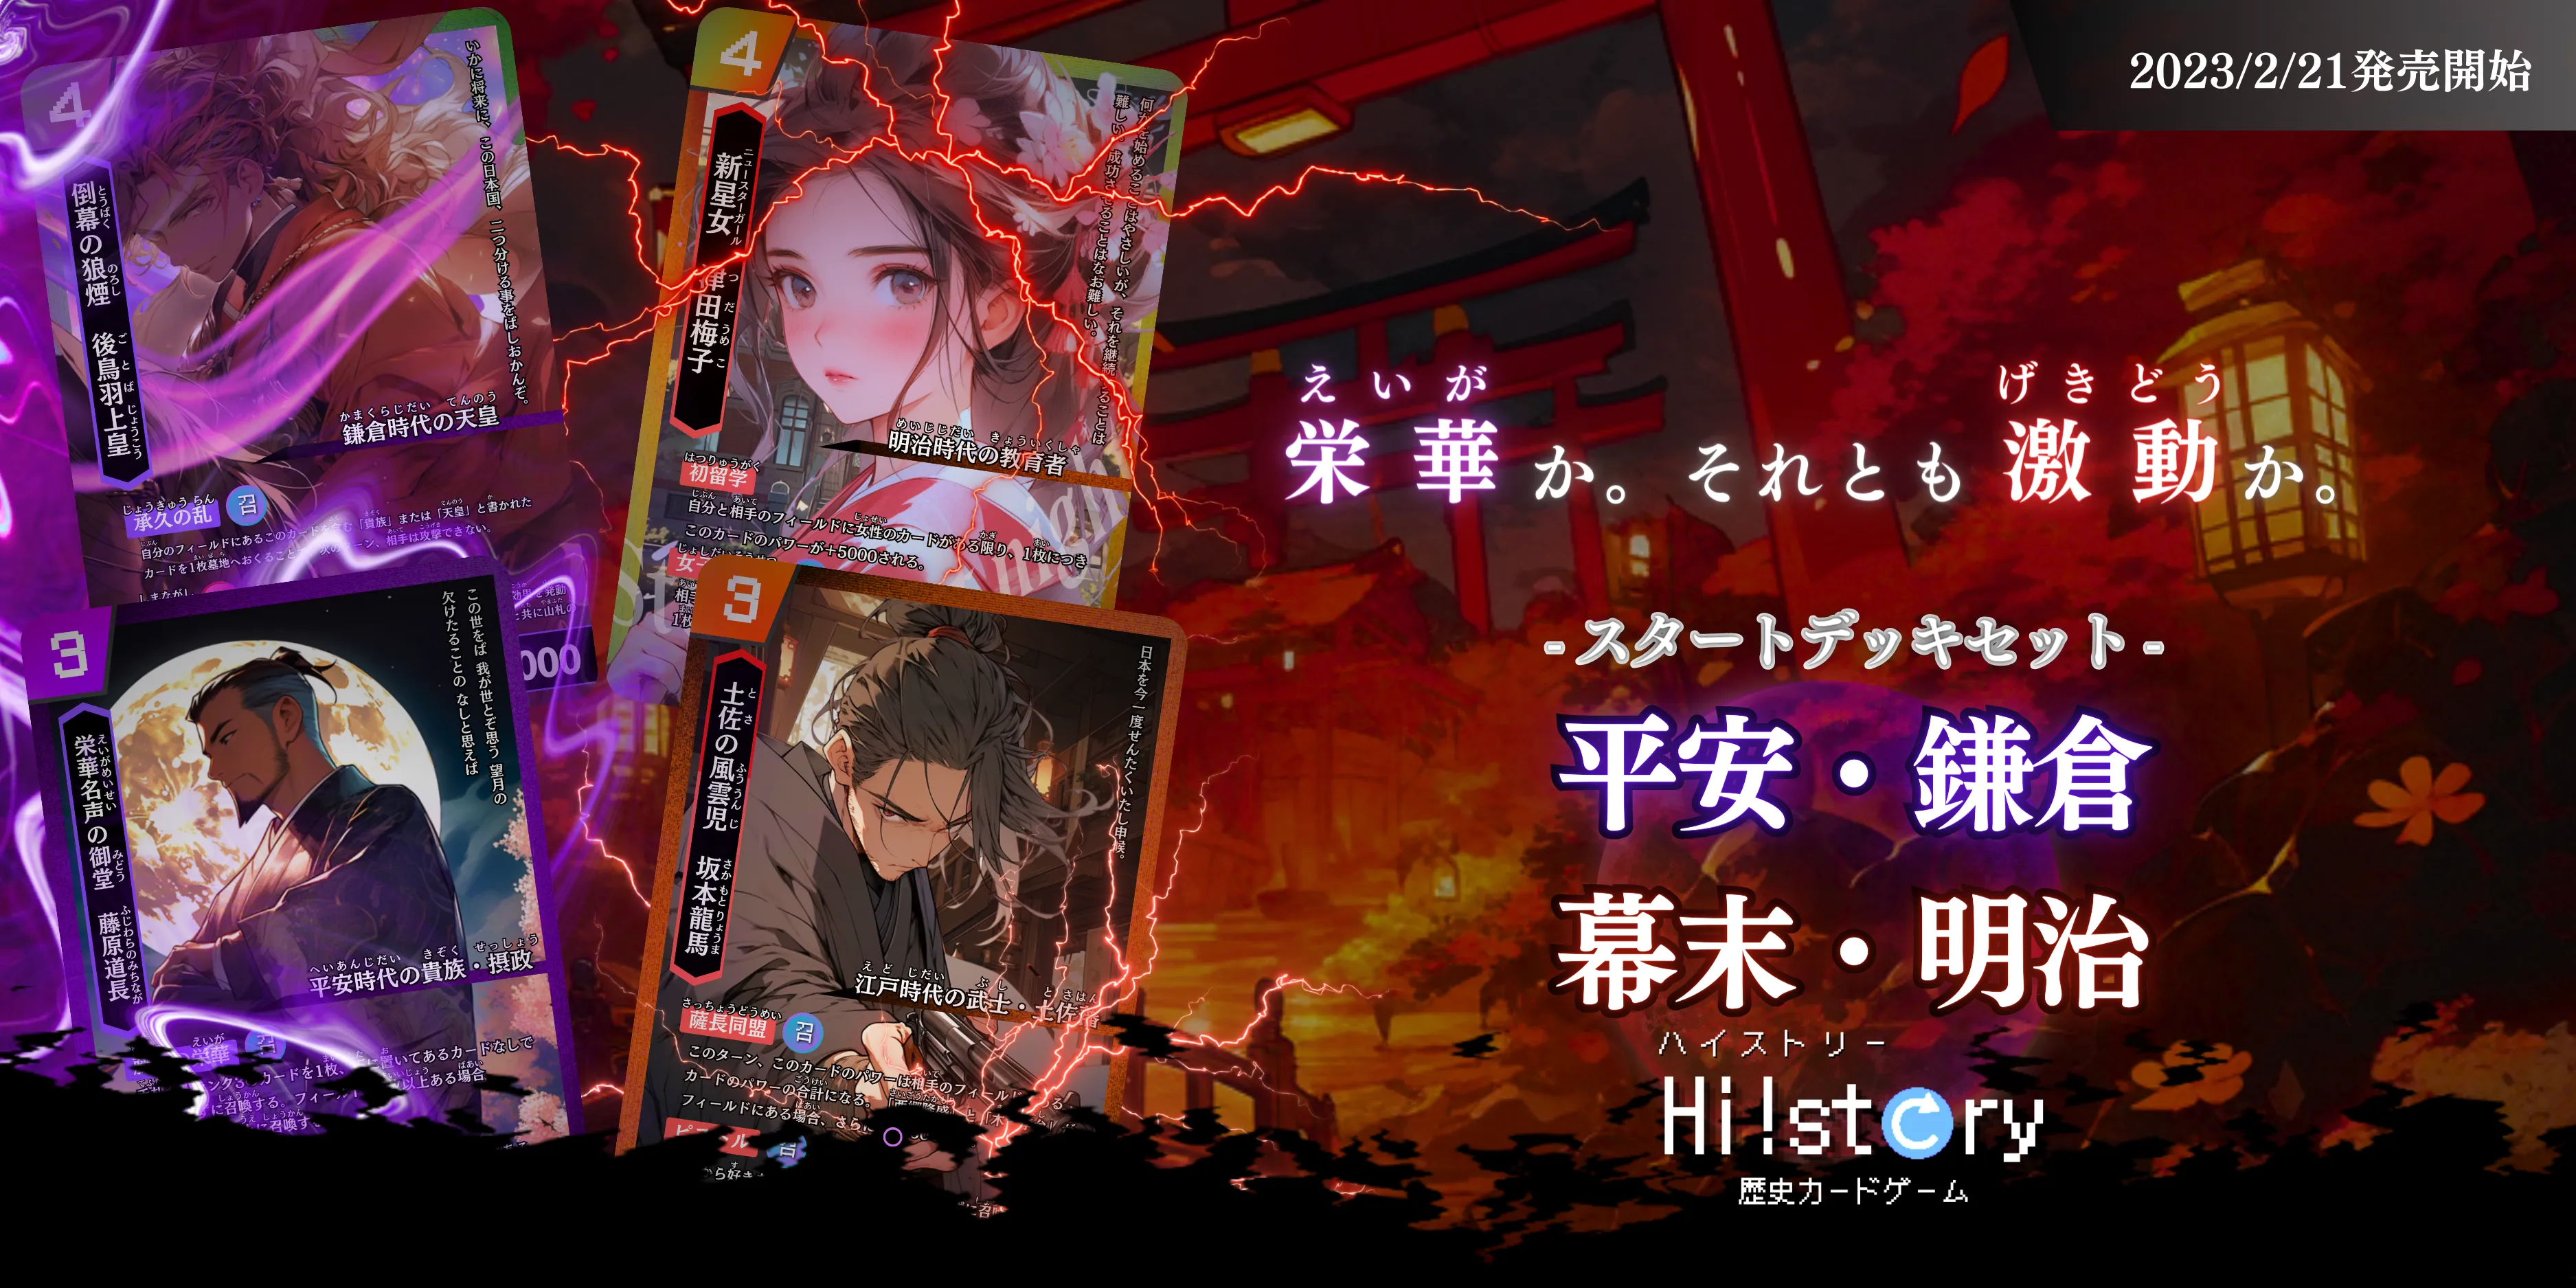 歴史トレーディングカードゲームHi!story（ハイスト）のシリーズの一つ「平安・鎌倉vs幕末・明治」のサムネイル画像